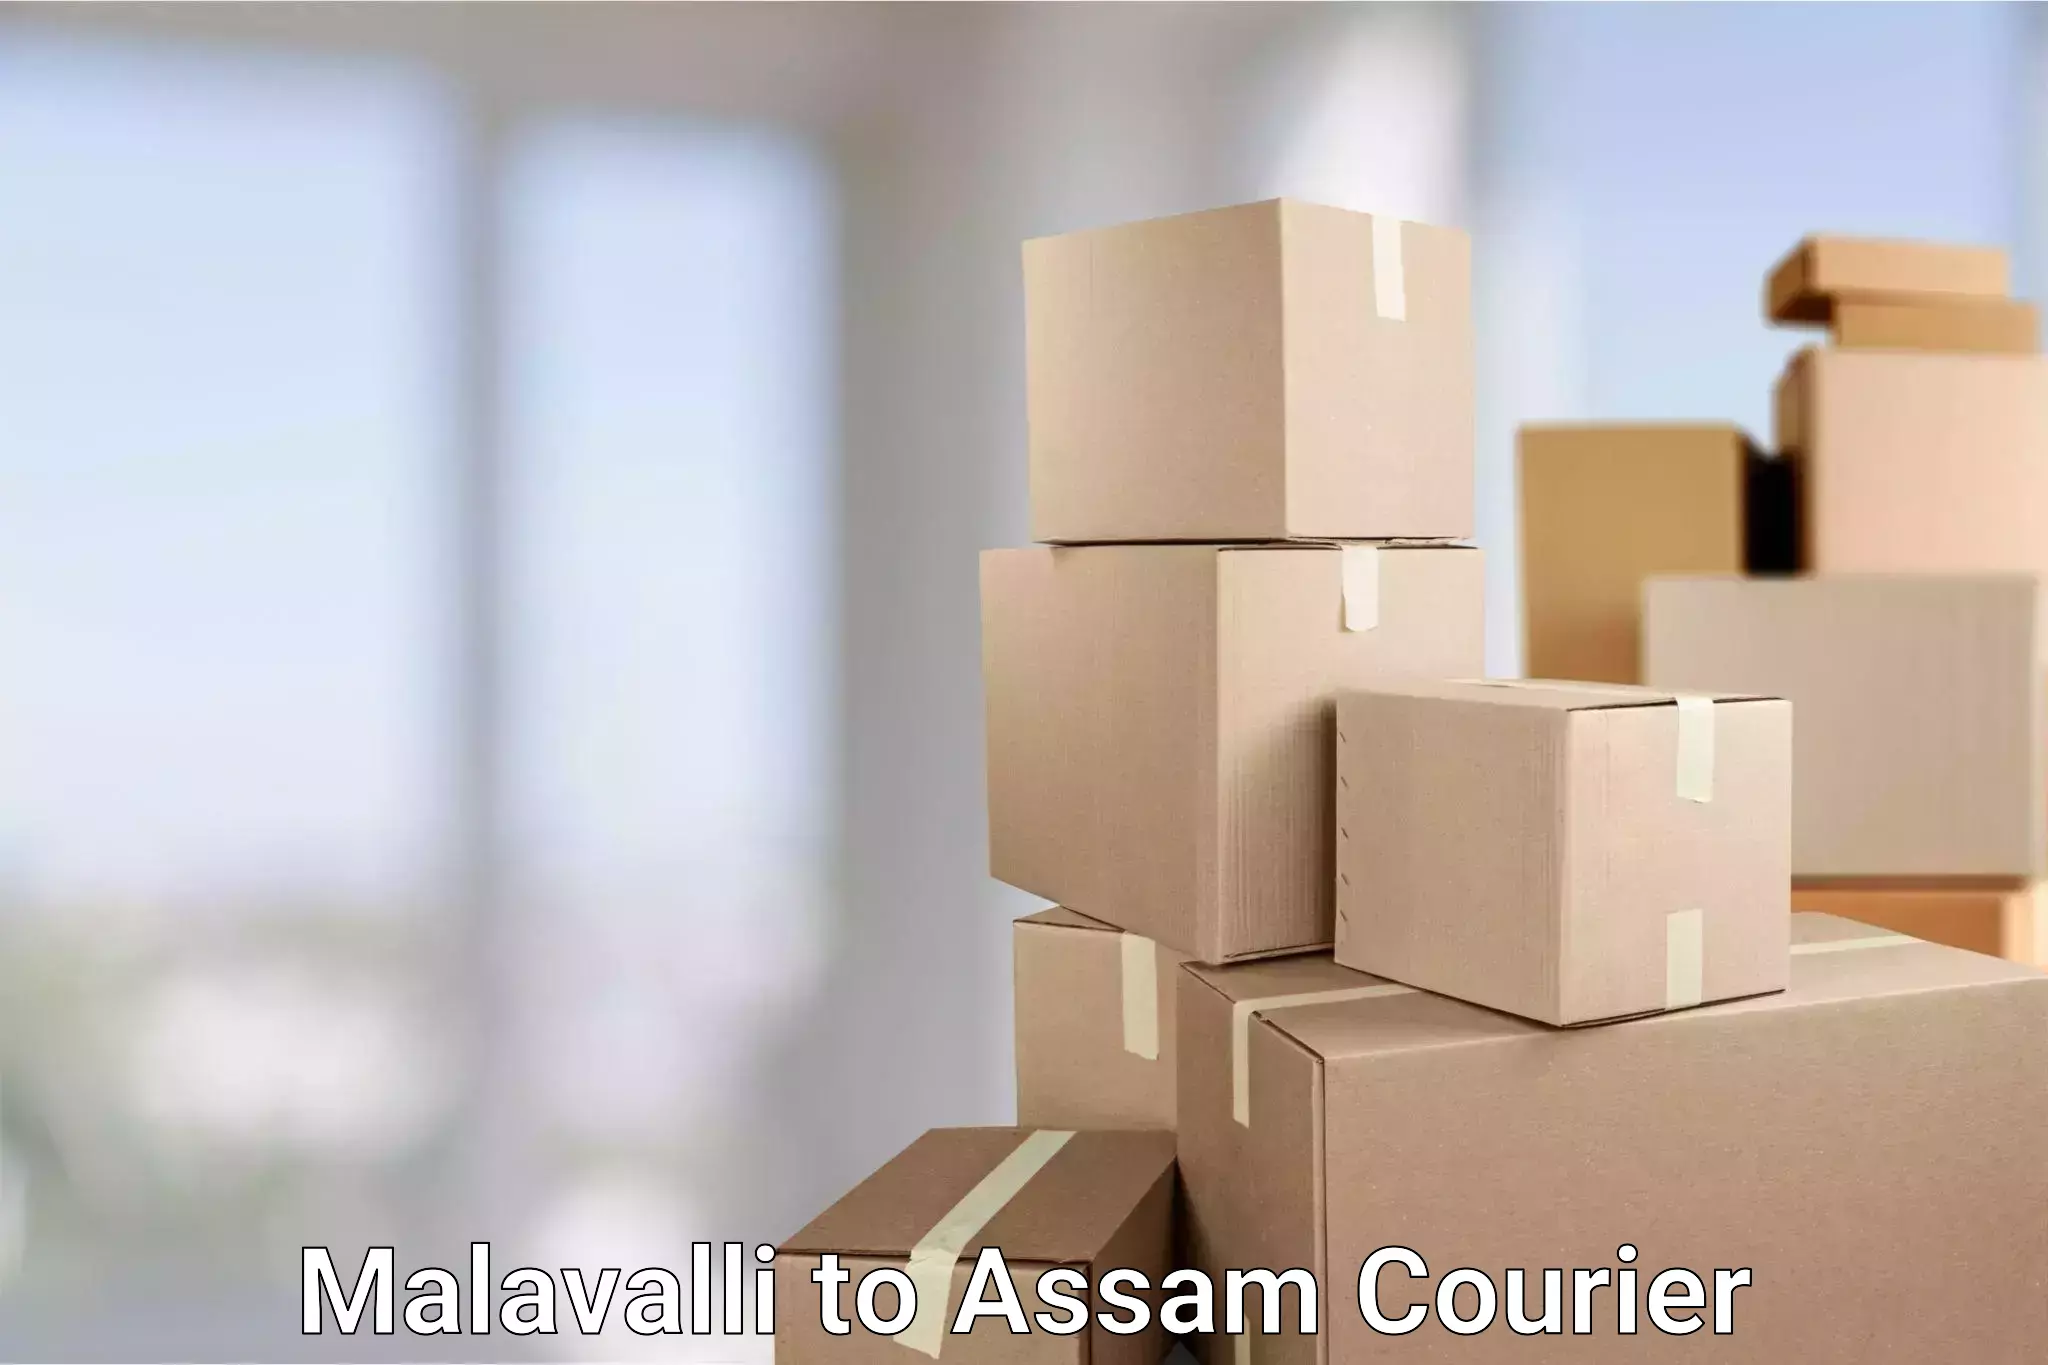 Express mail service Malavalli to Assam